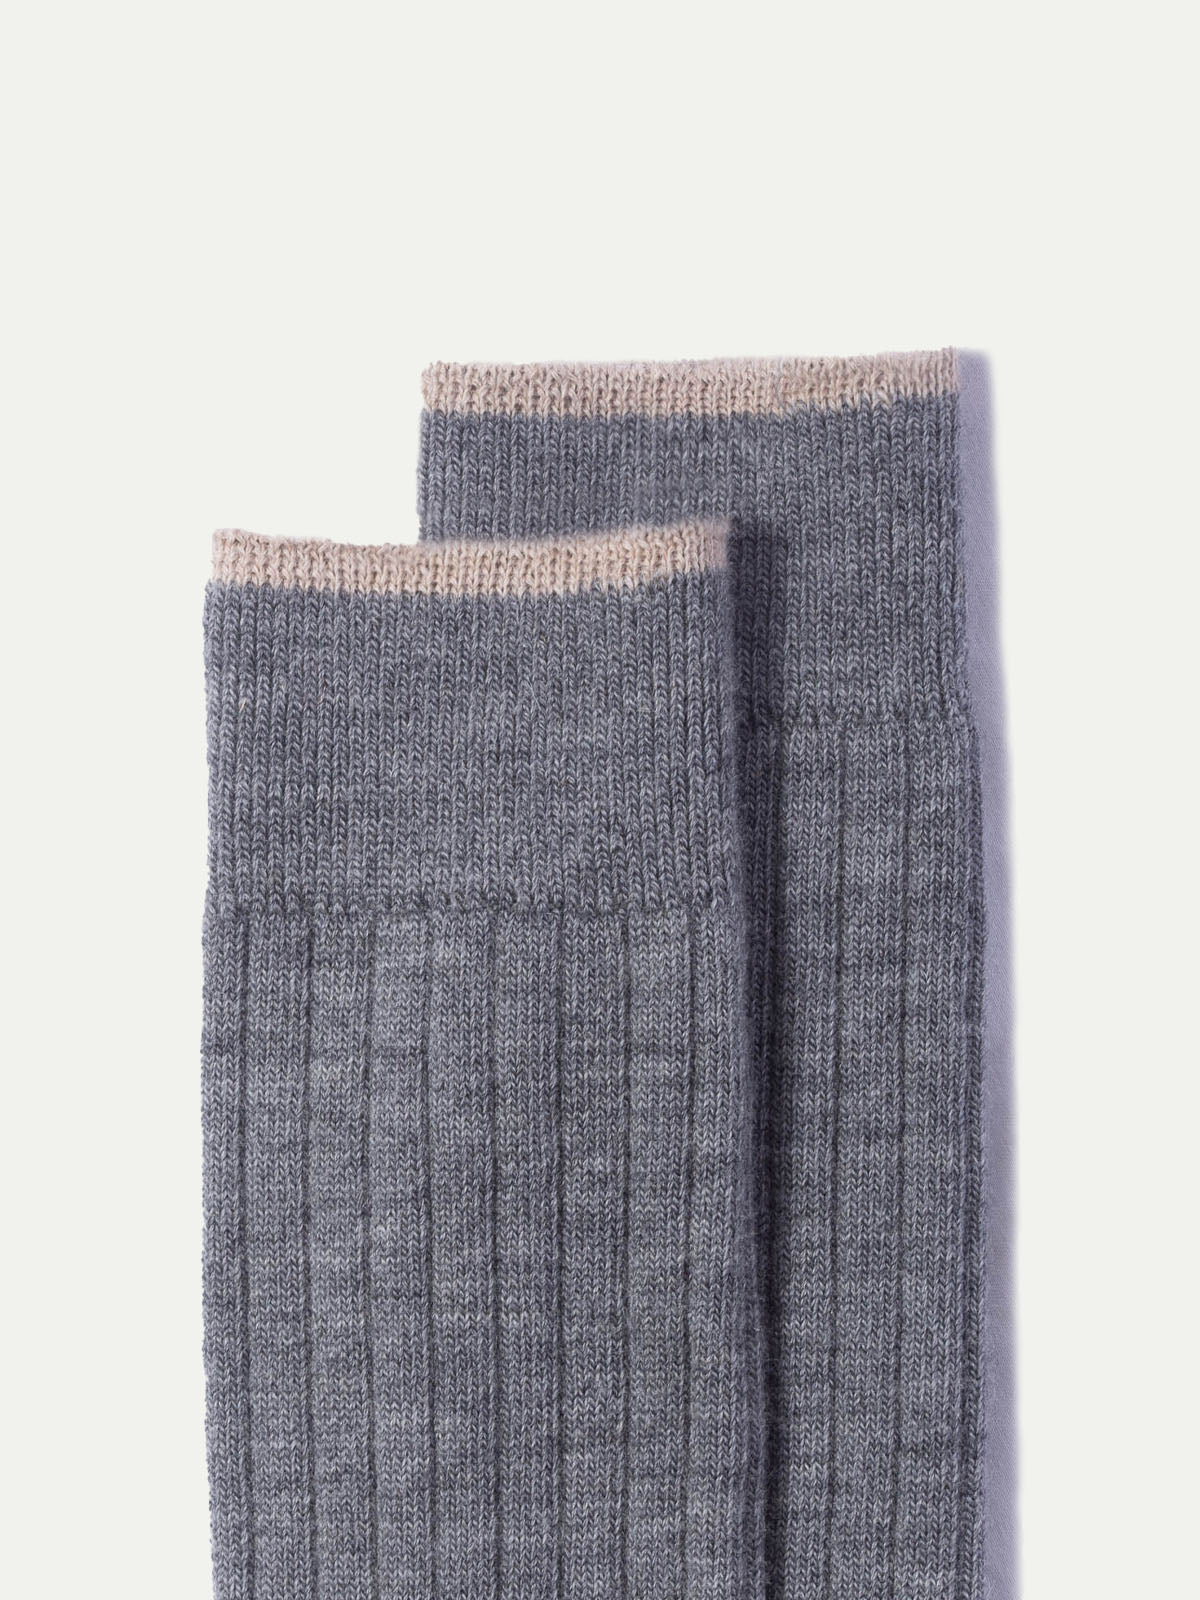 Gris clair - Chaussettes courtes en laine super résistantes - Made in Italy